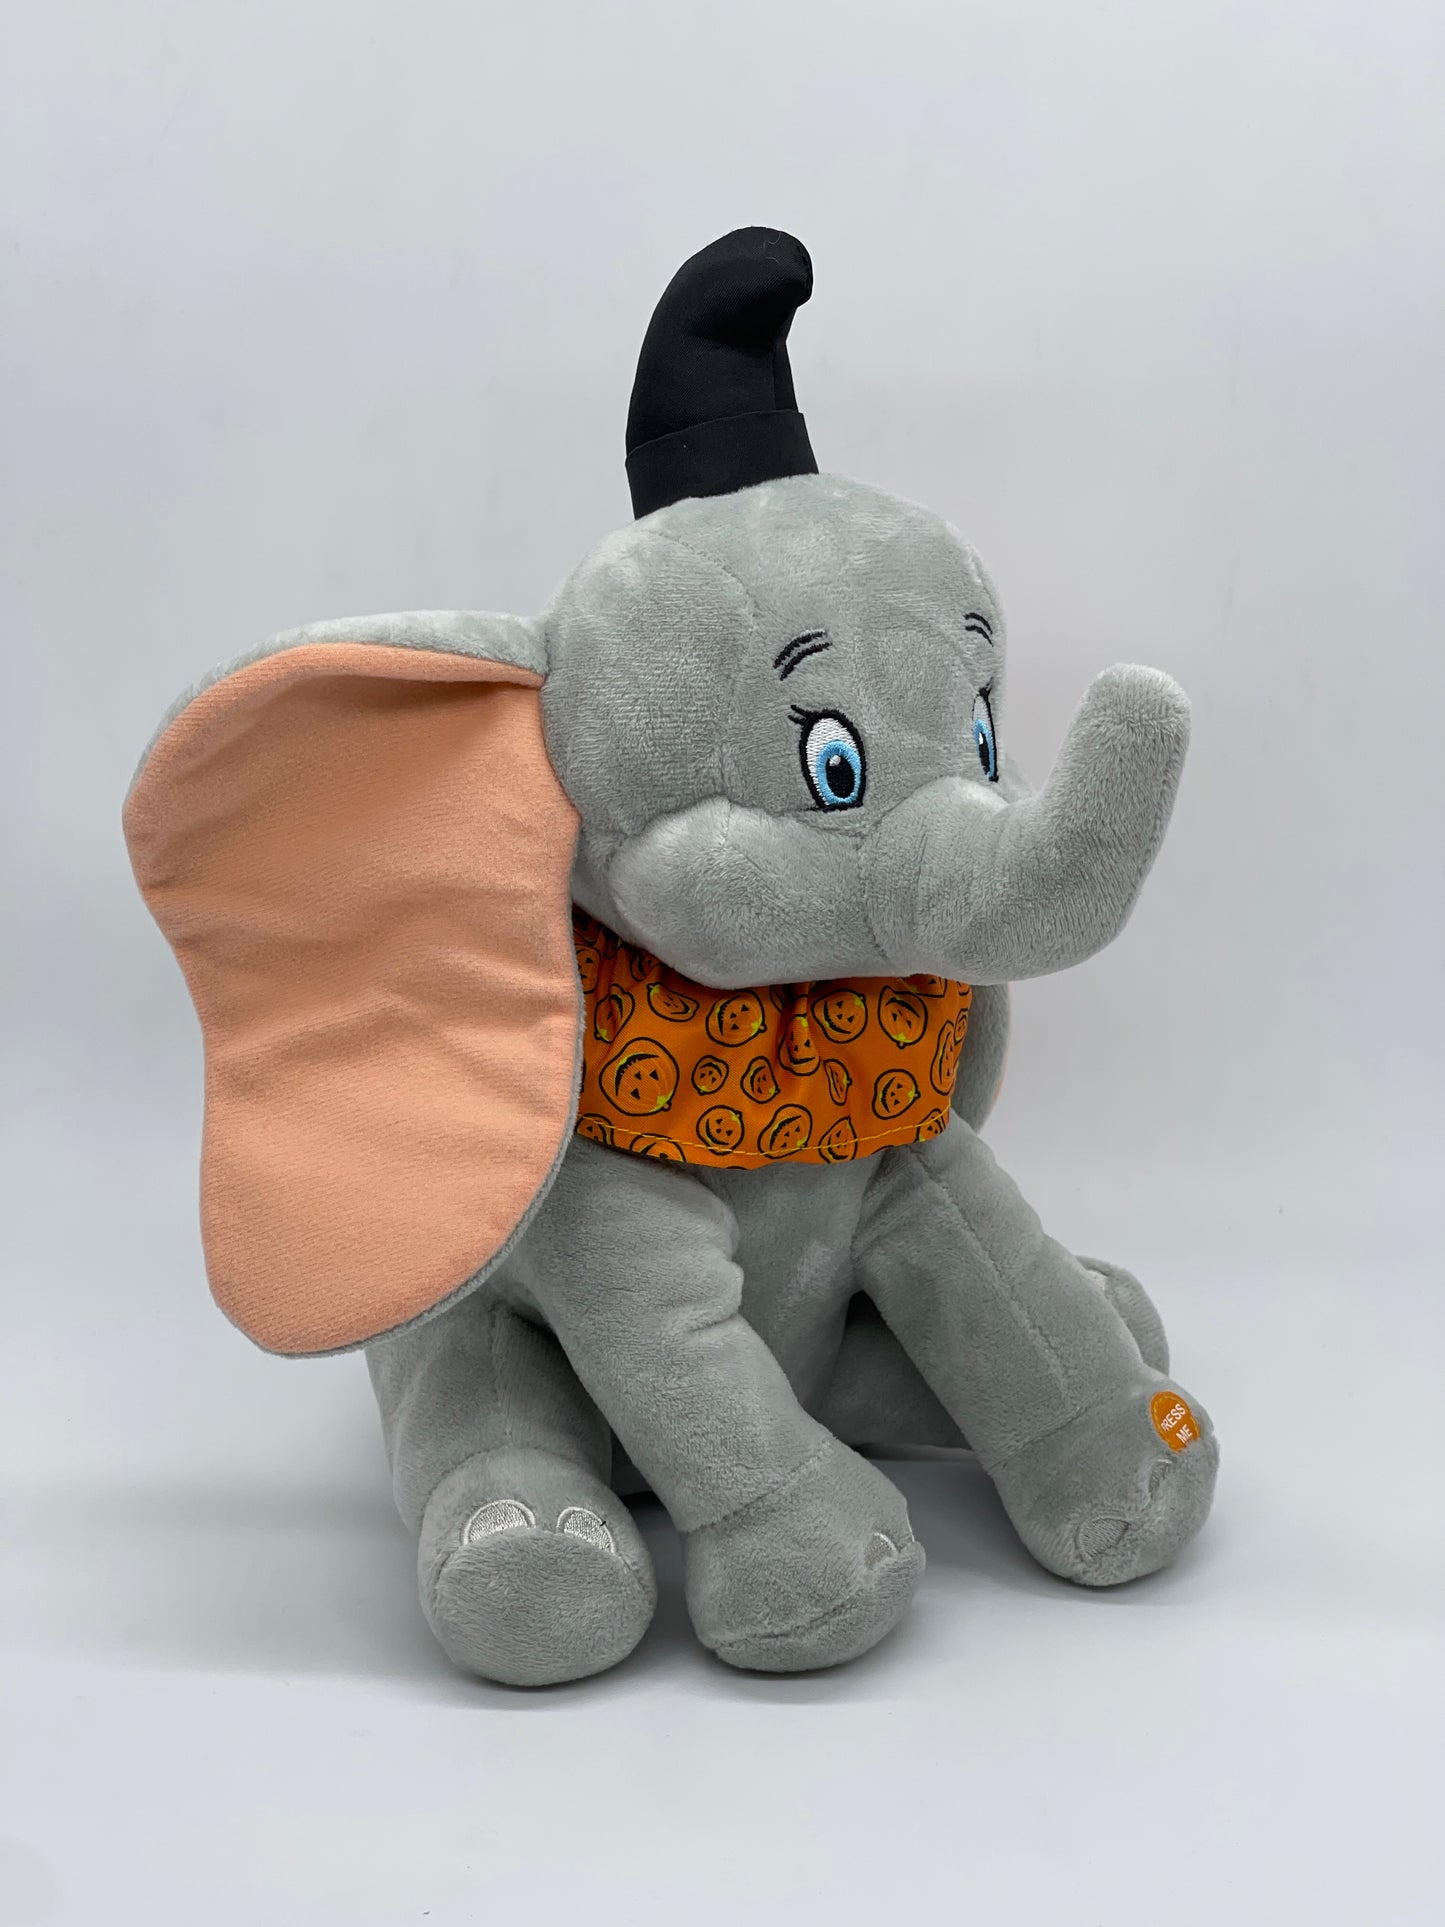 Disney Halloween "Dumbo Kürbis Pumpkin" Plüschtier Stofftier mit Halloweensound